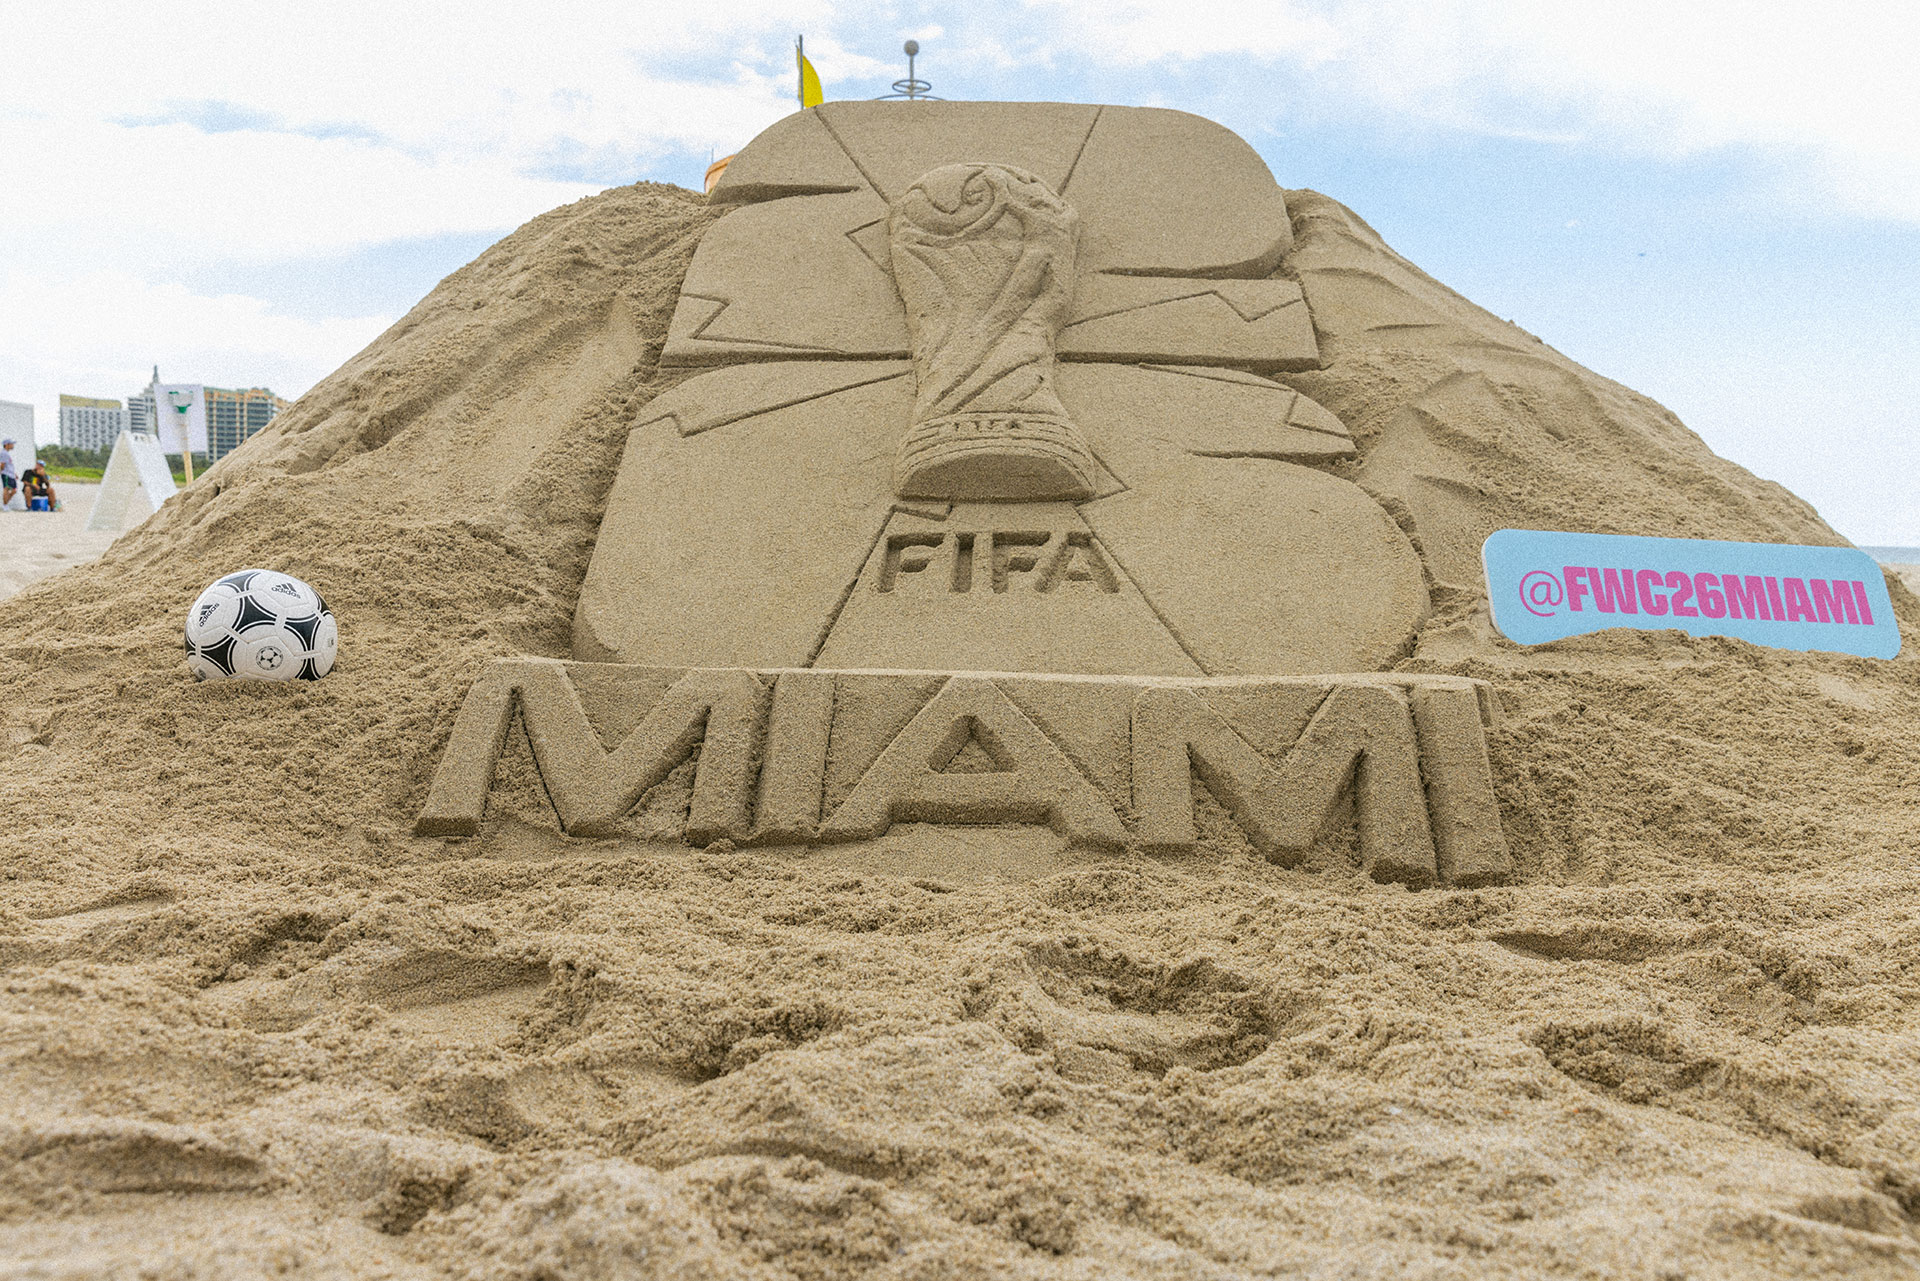 La magia del fútbol llega a Miami: la ciudad anfitriona de la Copa Mundial FIFA 2026